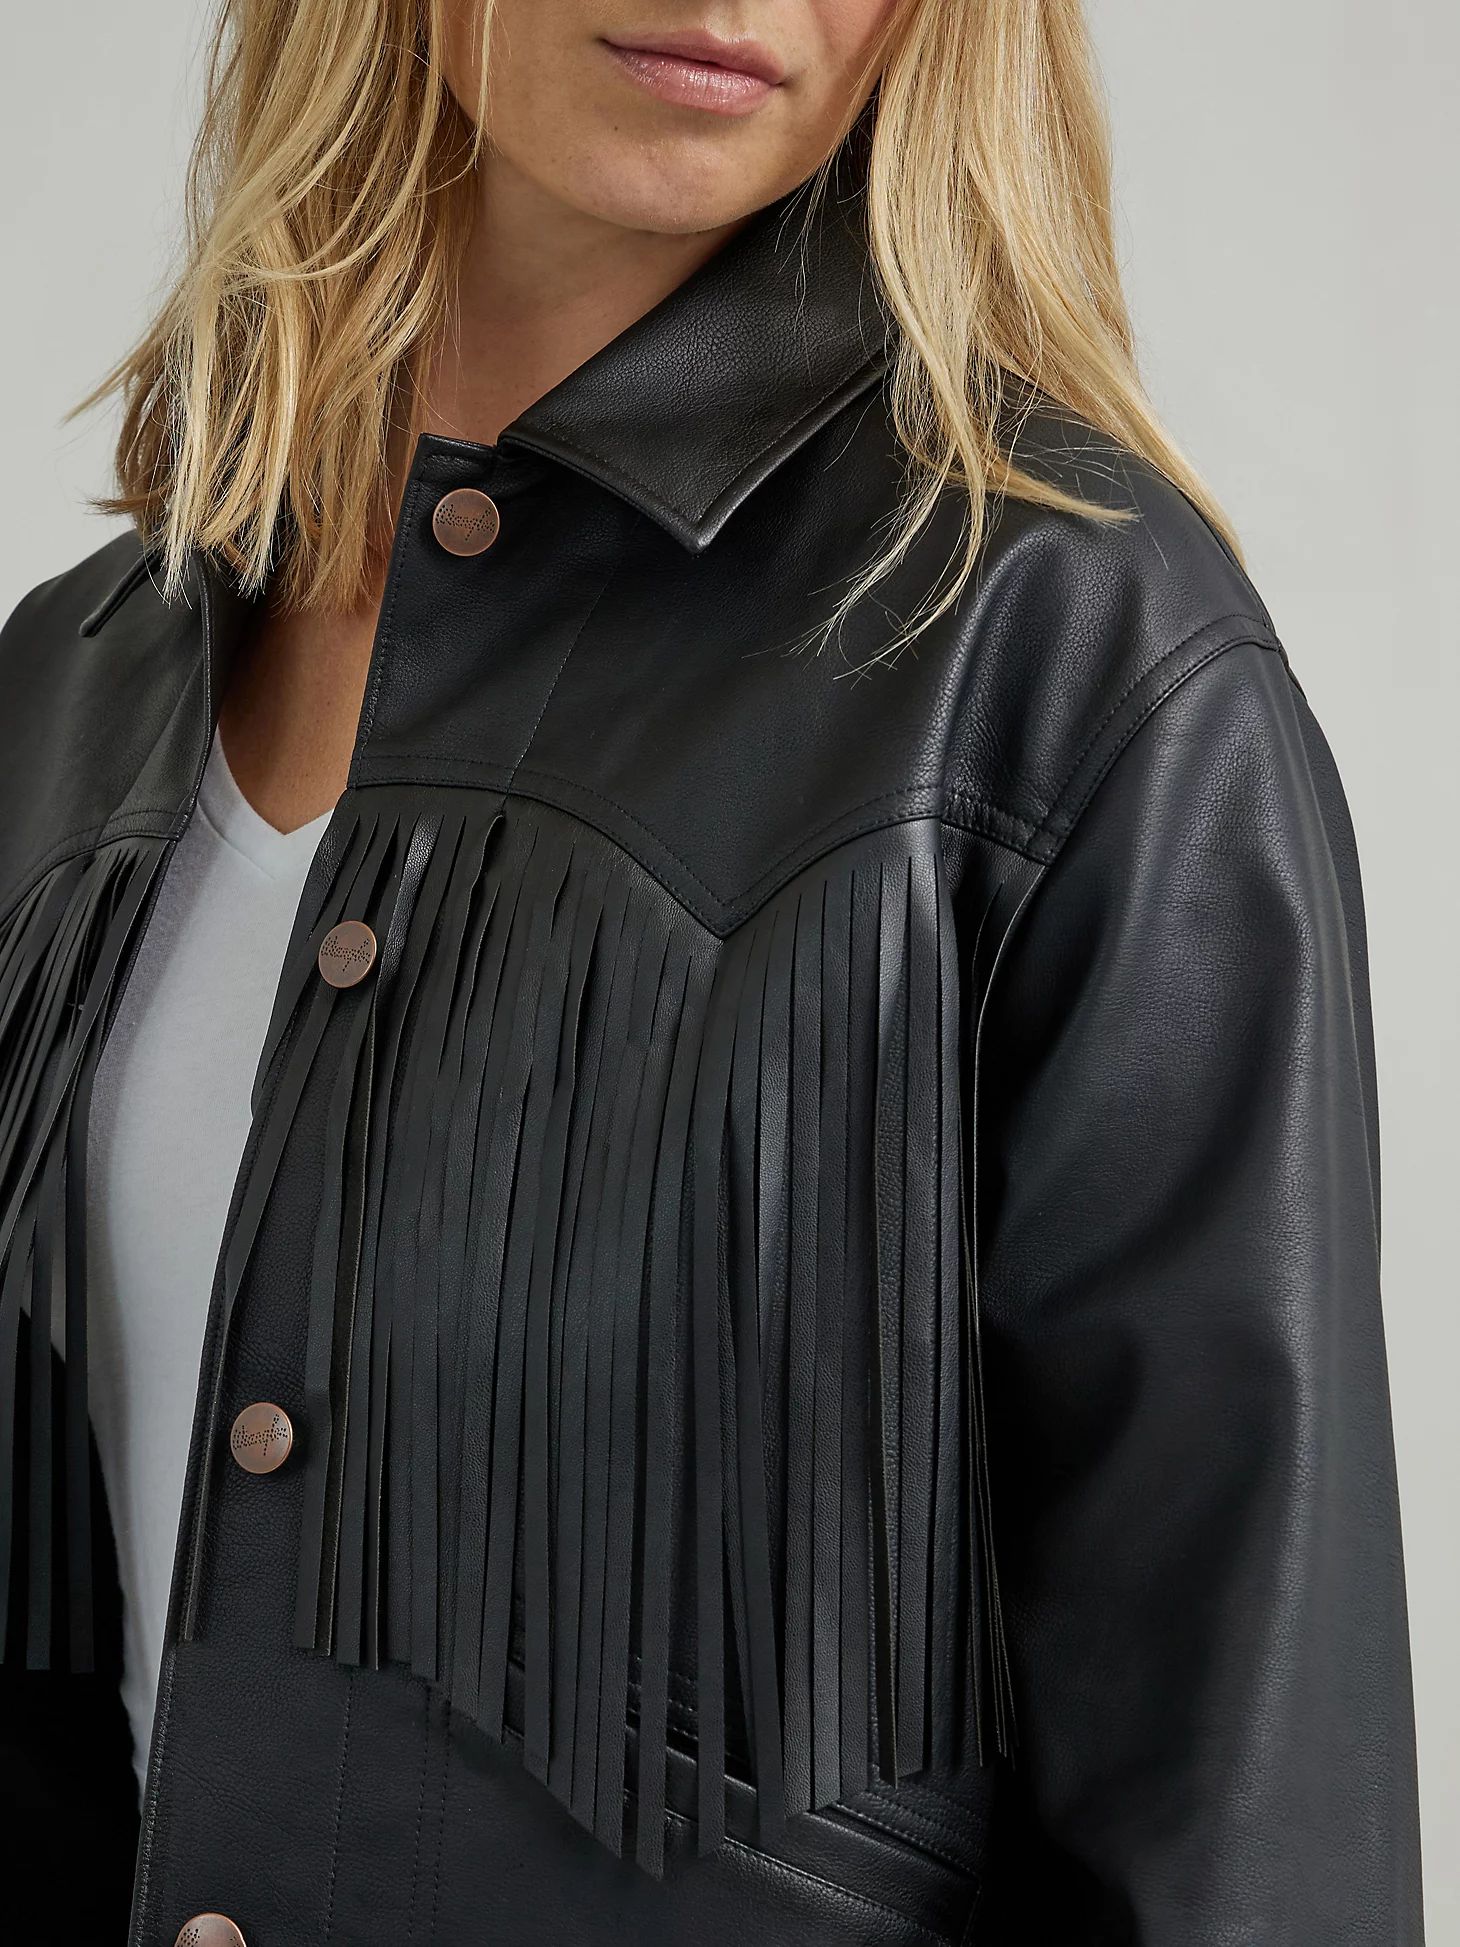 Women's Oversized Fringe Jacket in Black | Wrangler